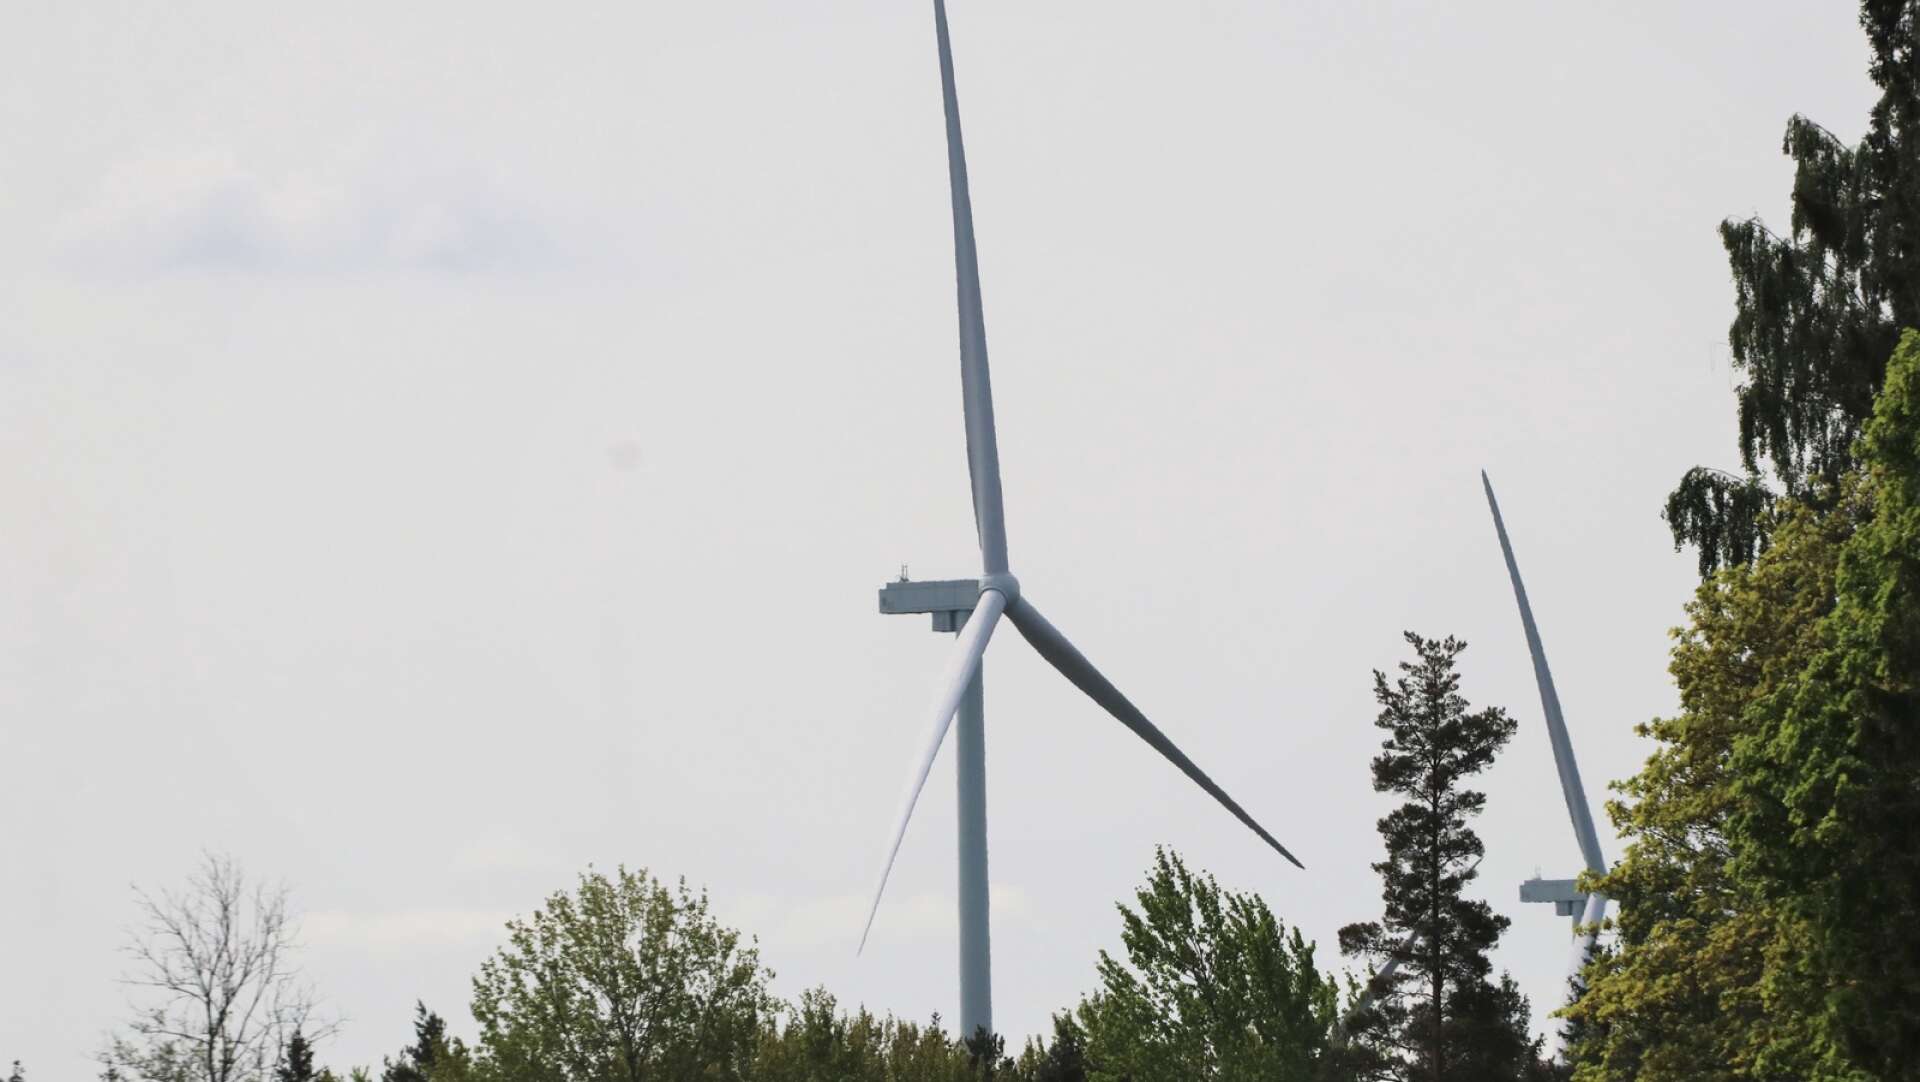 Regeringen behöver underlätta för den landbaserade vindkraften. Om inte riskerar regeringen möjligheten för värmlänningarna att få el till rimliga priser, skriver fem forskare.